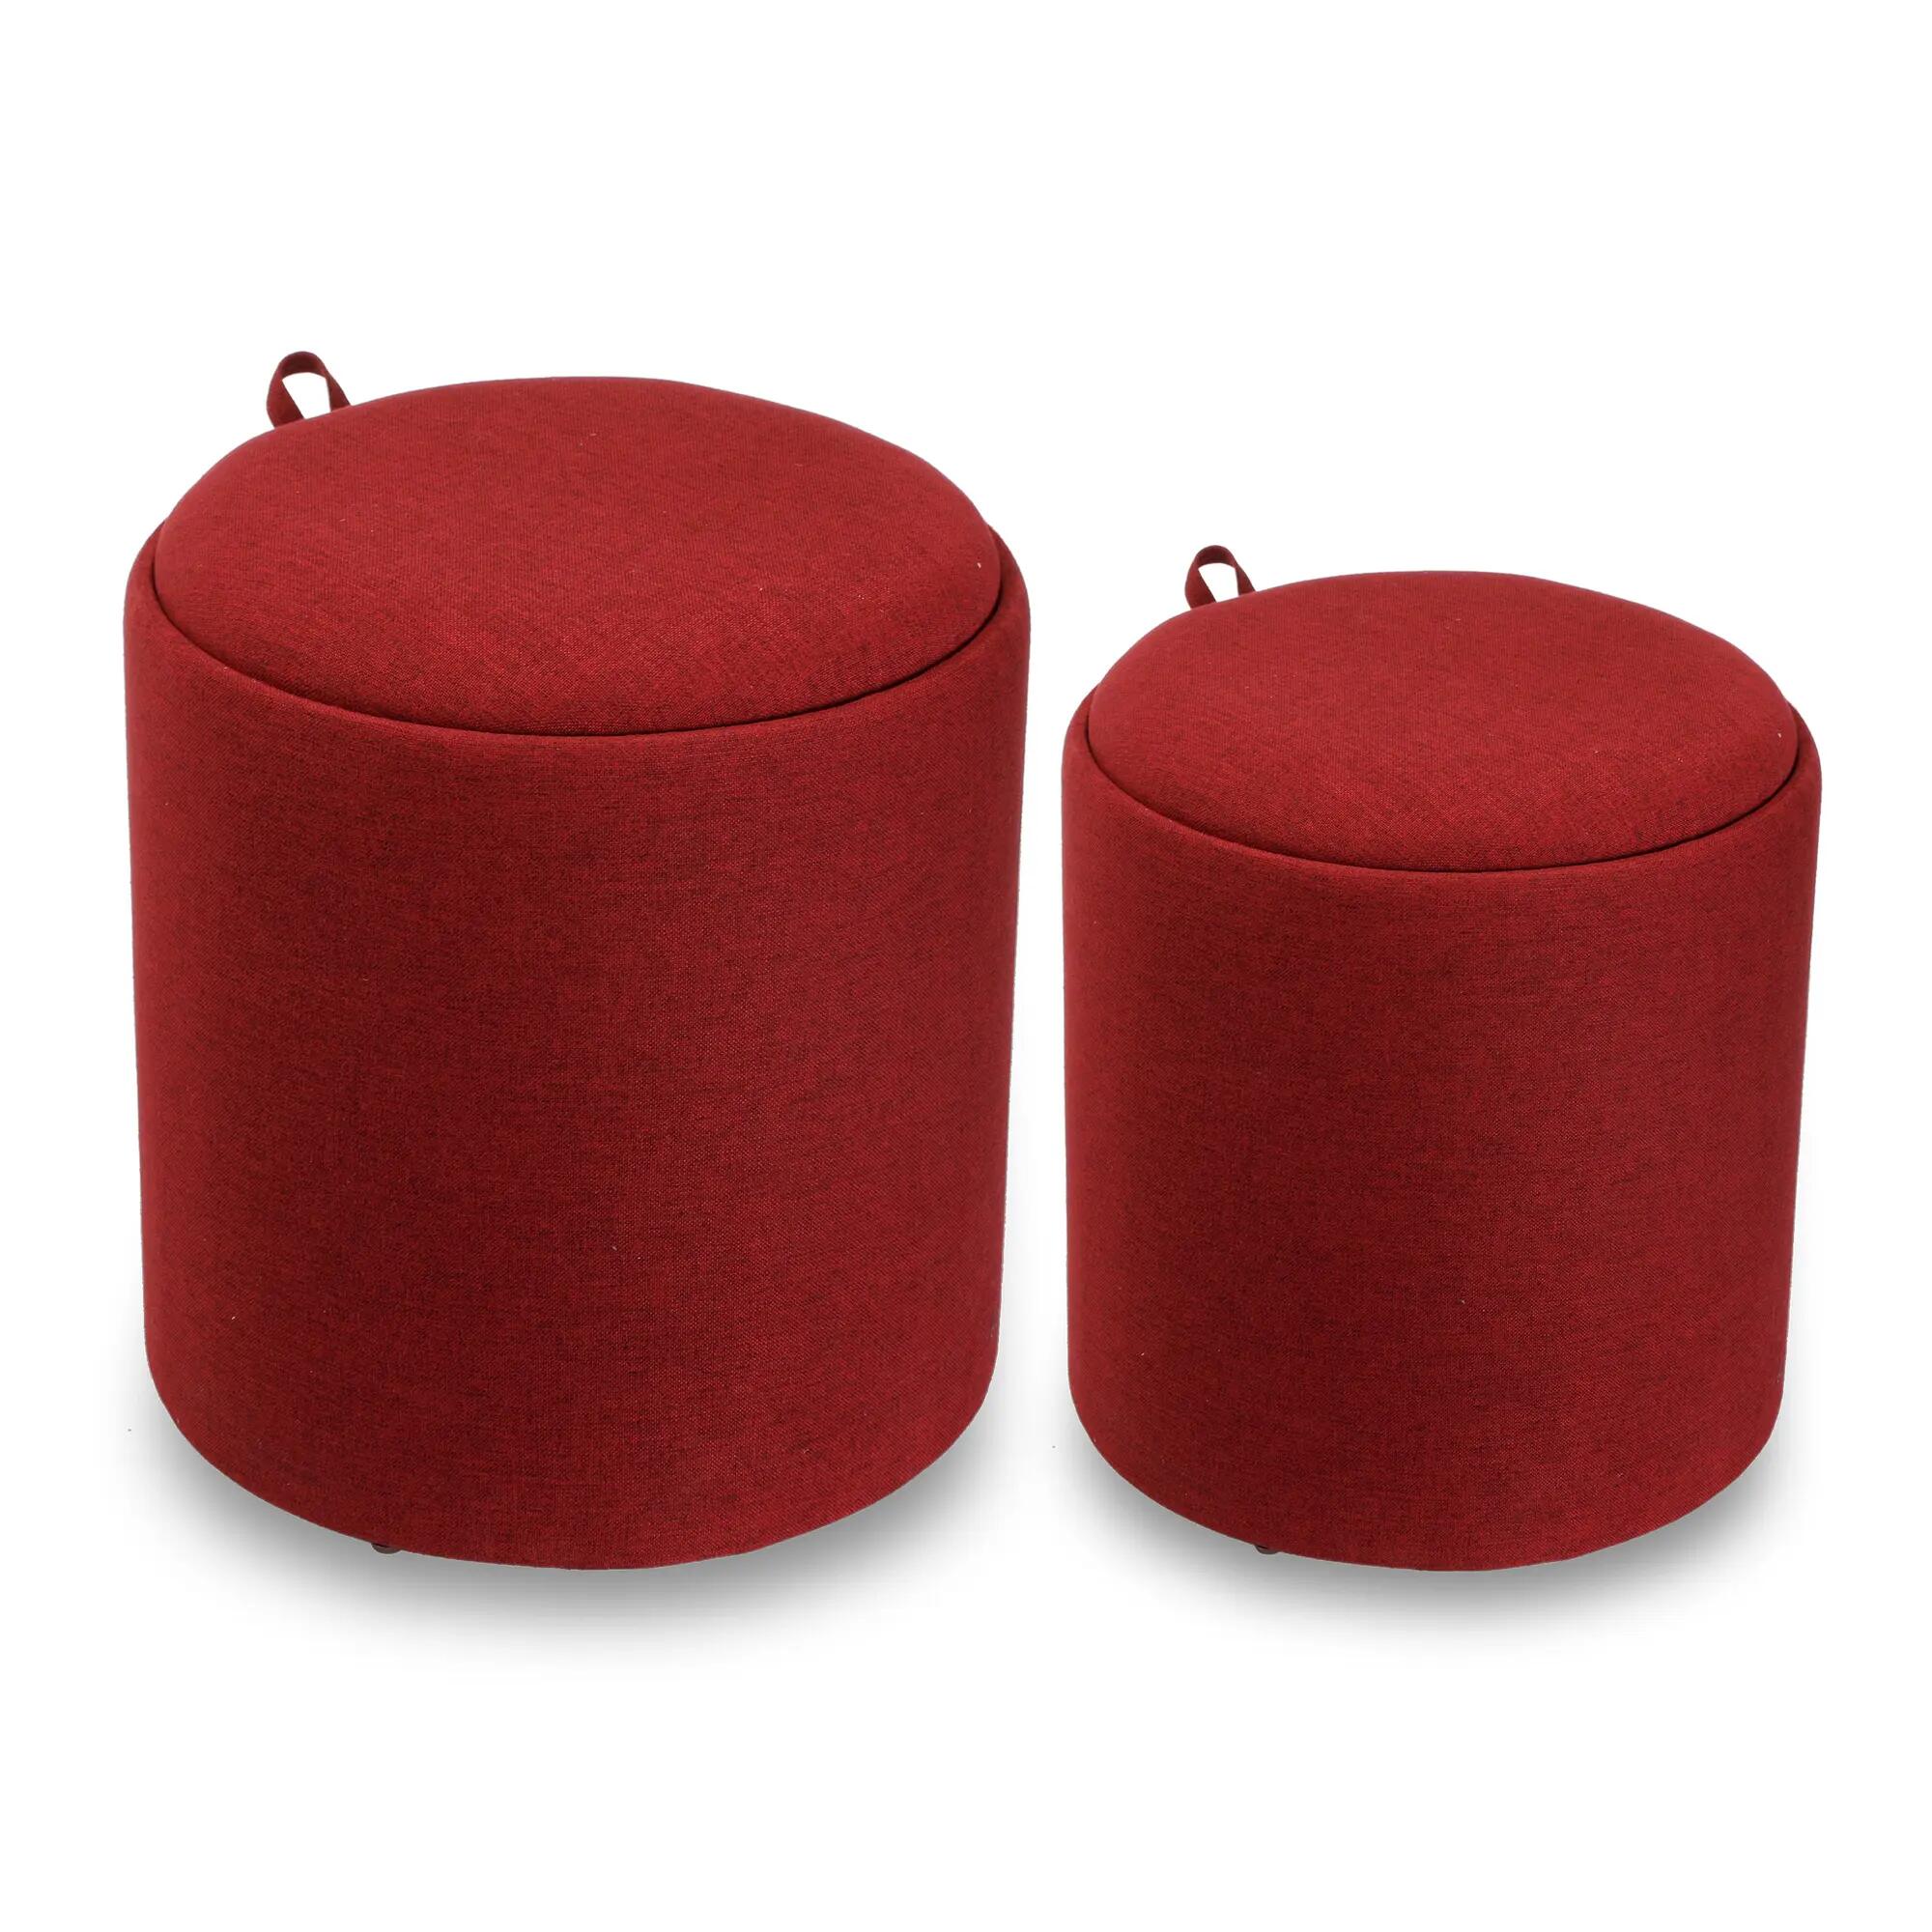 Set de 2 puffs auriga almacenaje redono con bandeja color rojo de 39x44cm